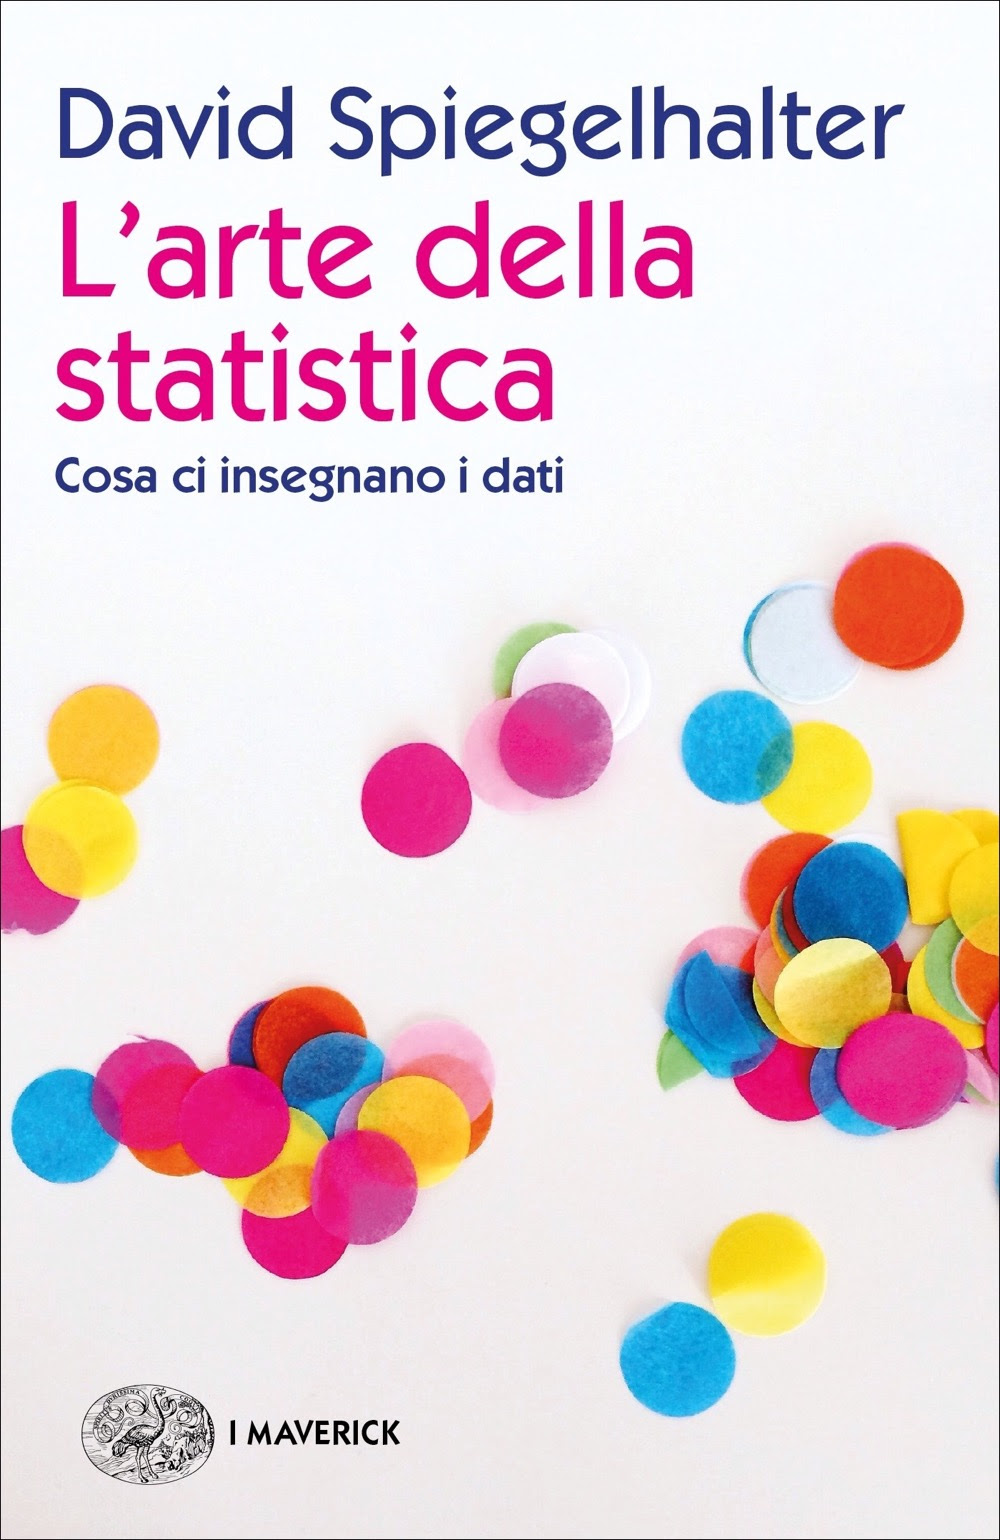 L'arte della statistica: Cosa ci insegnano i dati in Kindle/PDF/EPUB